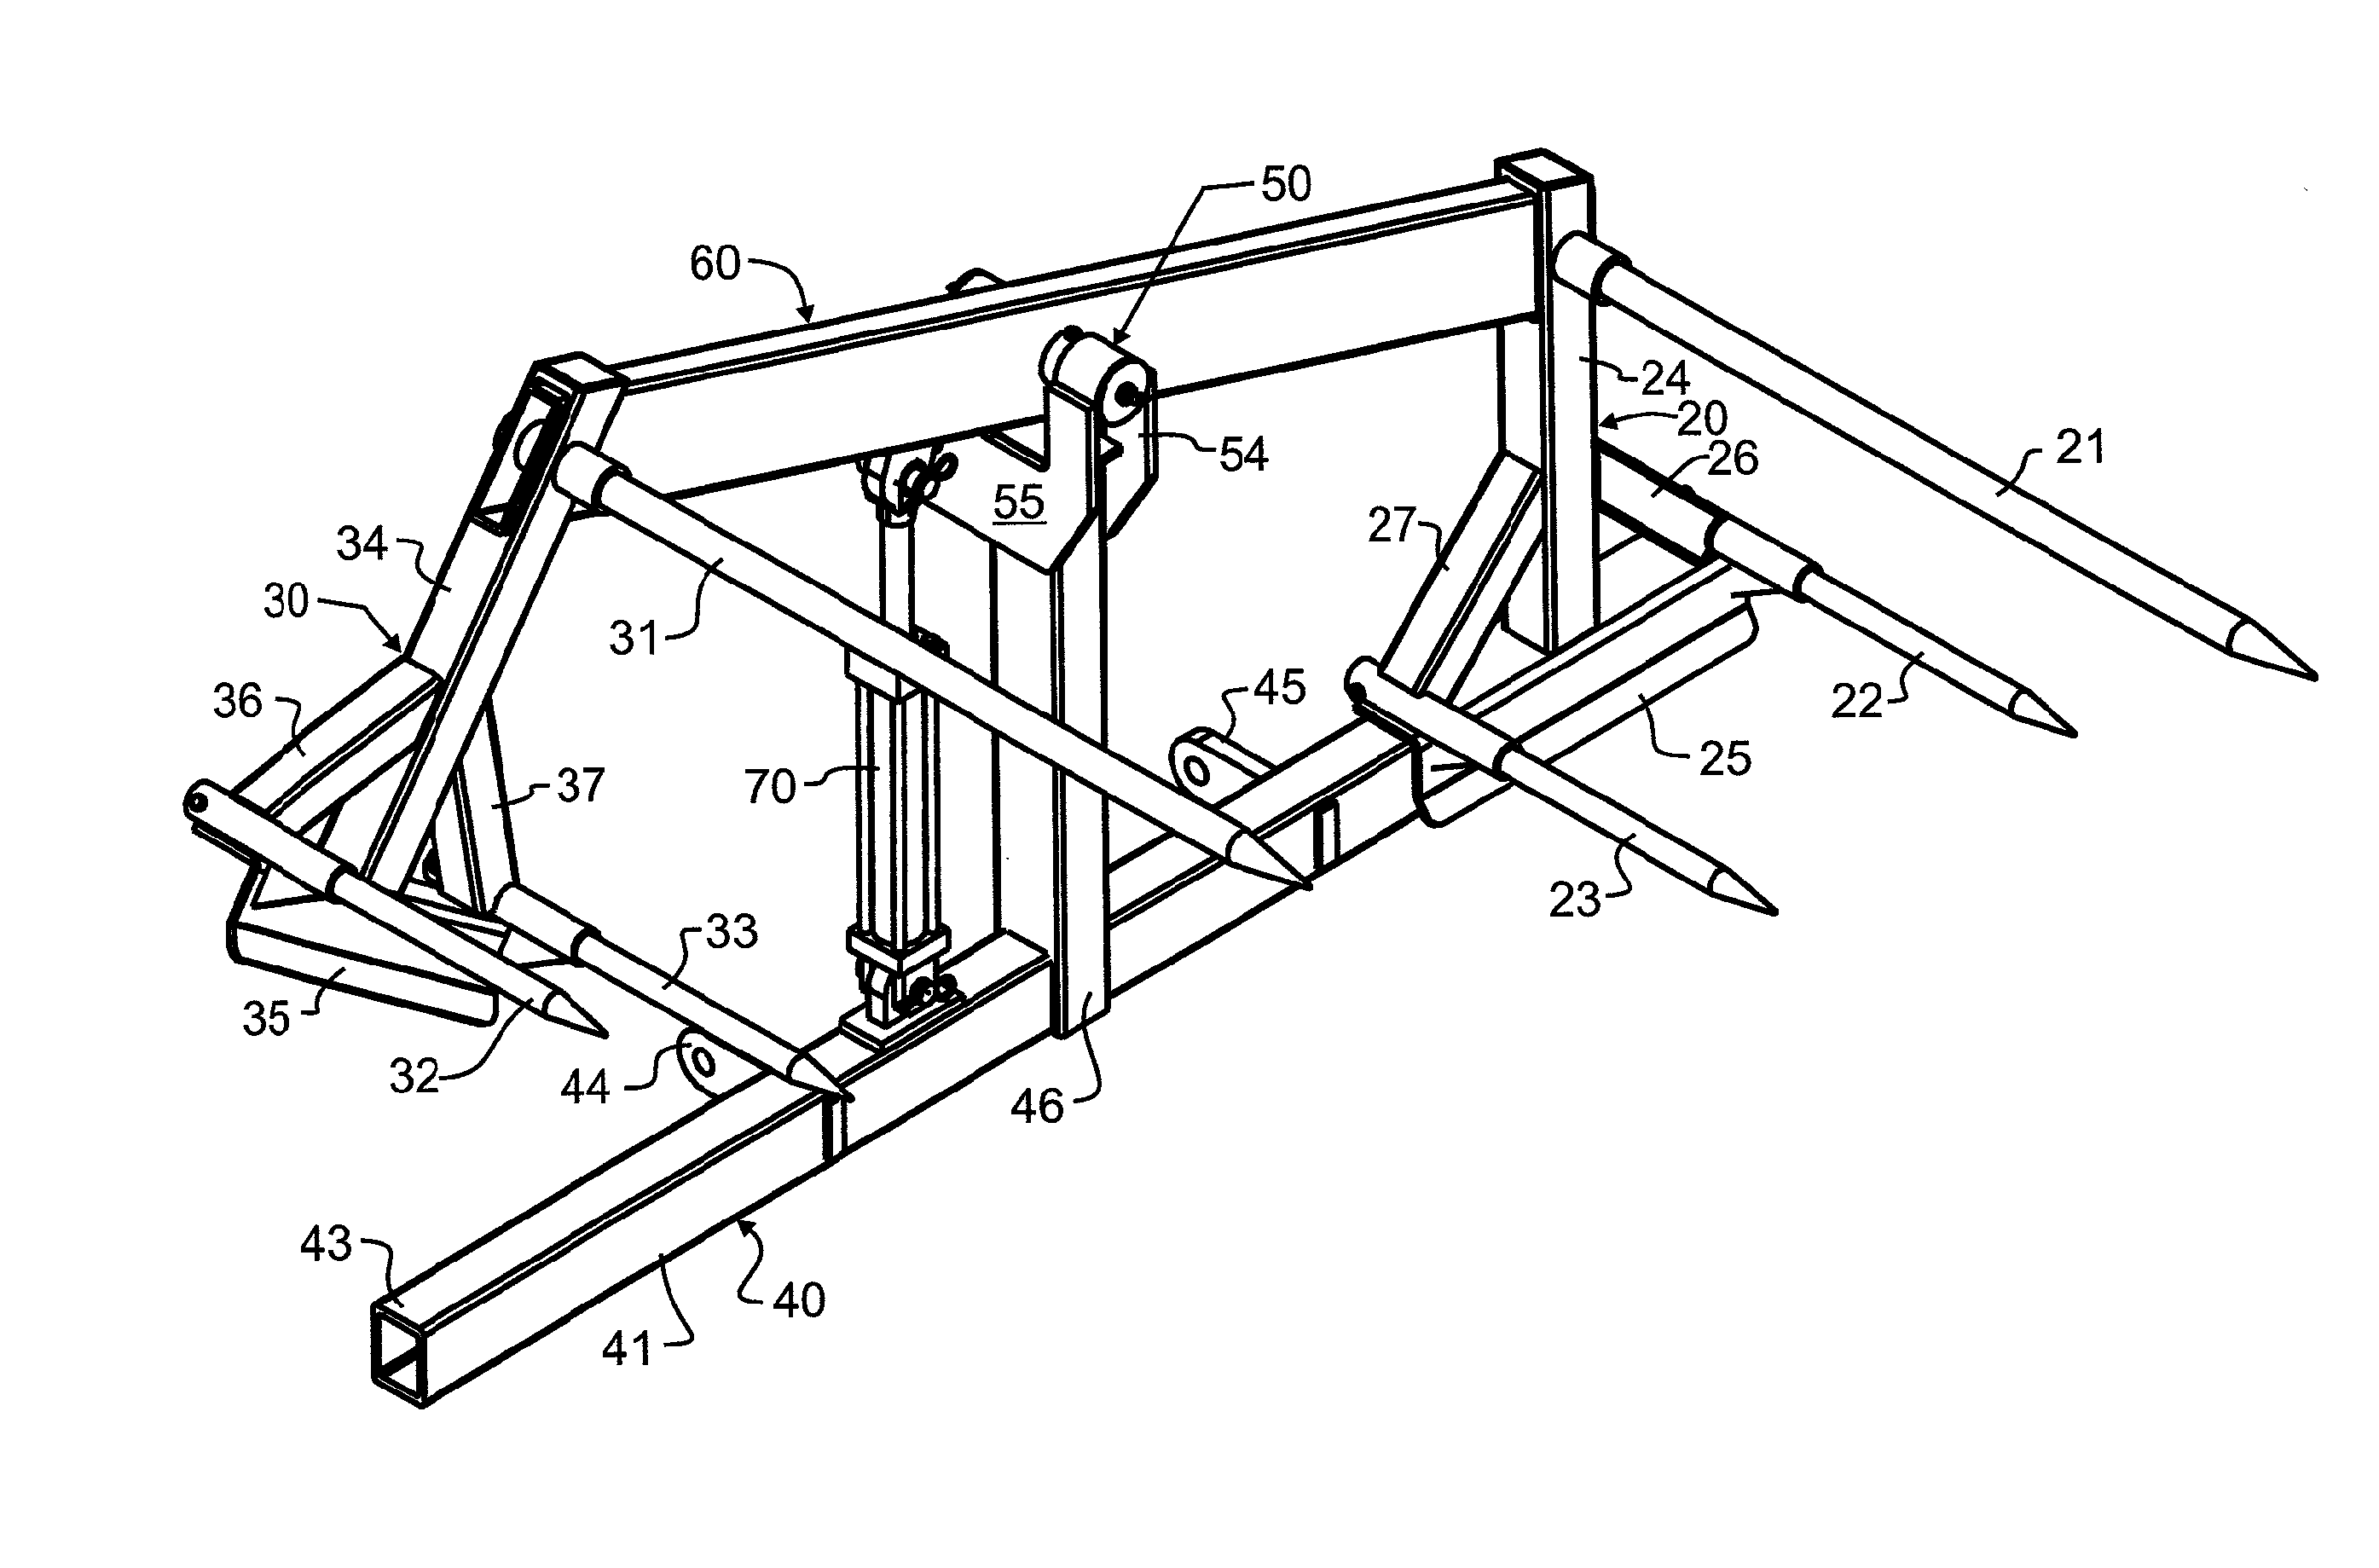 Dual bale lift with longitudinal and machinery pivots